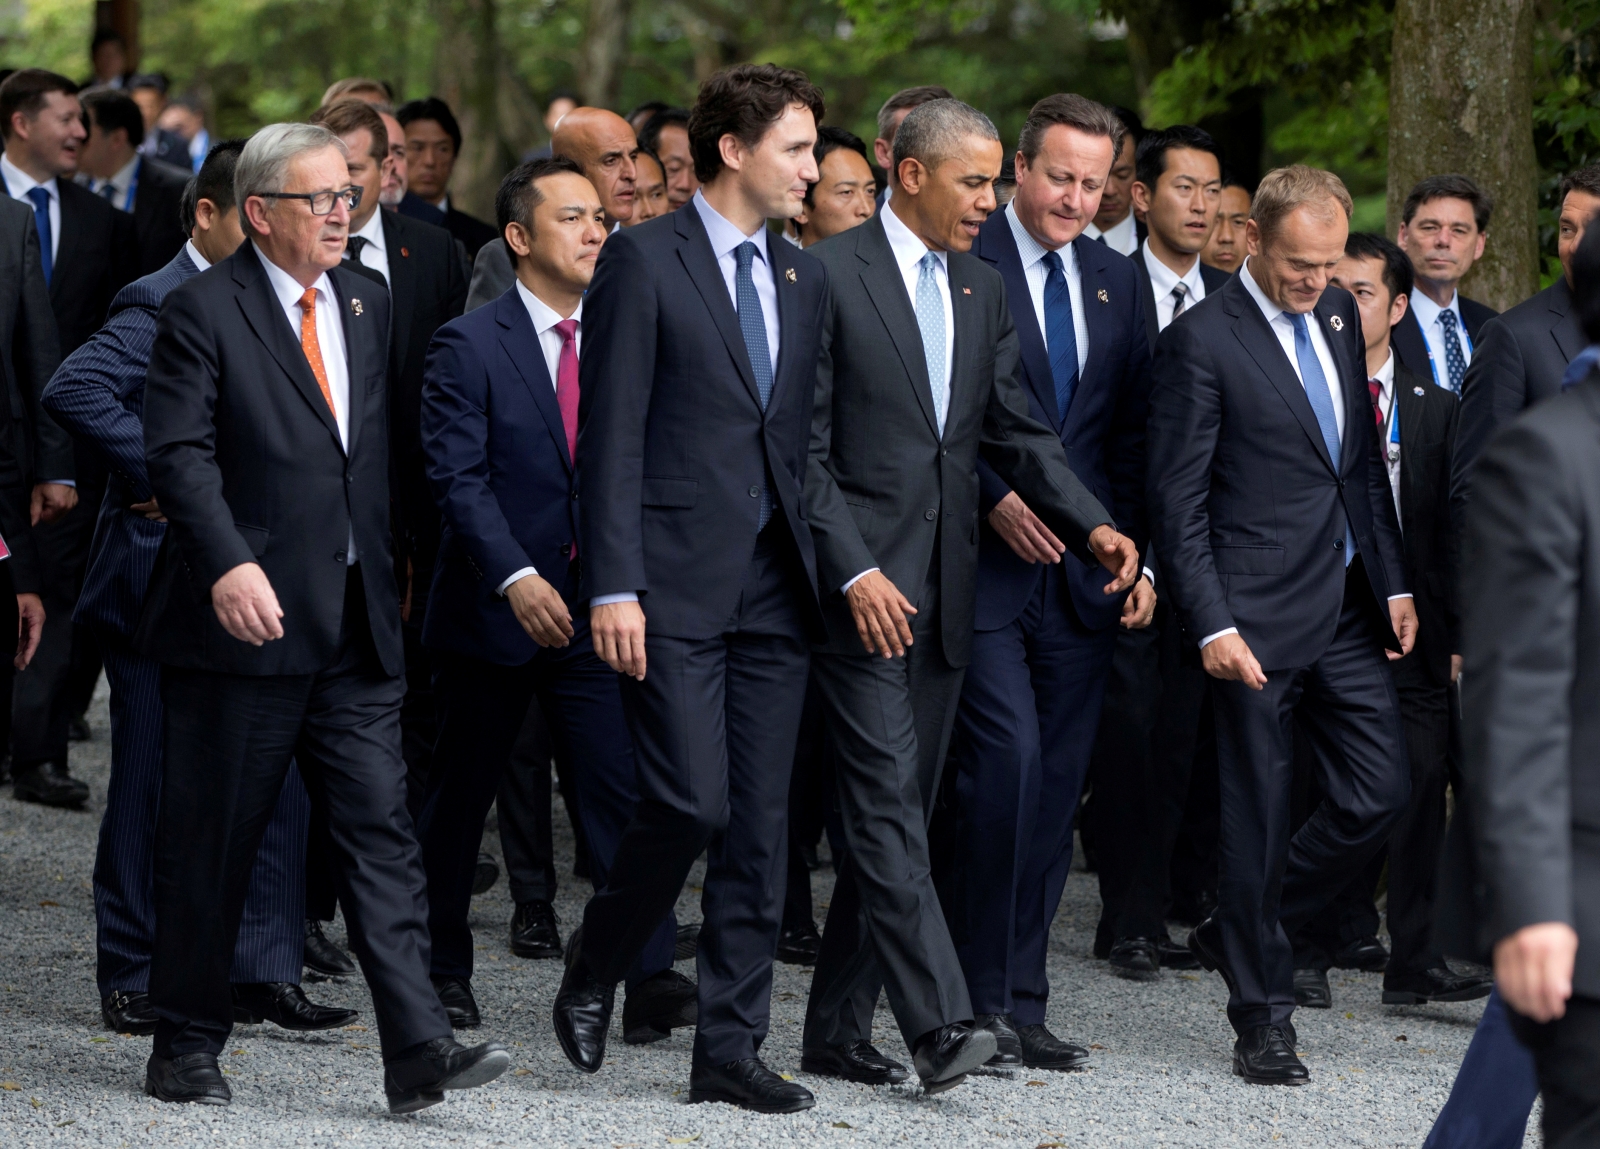 Много семерок. G7 Summit. G7 большая семерка. Саммит g7 в Японии. Summit g7 2014.